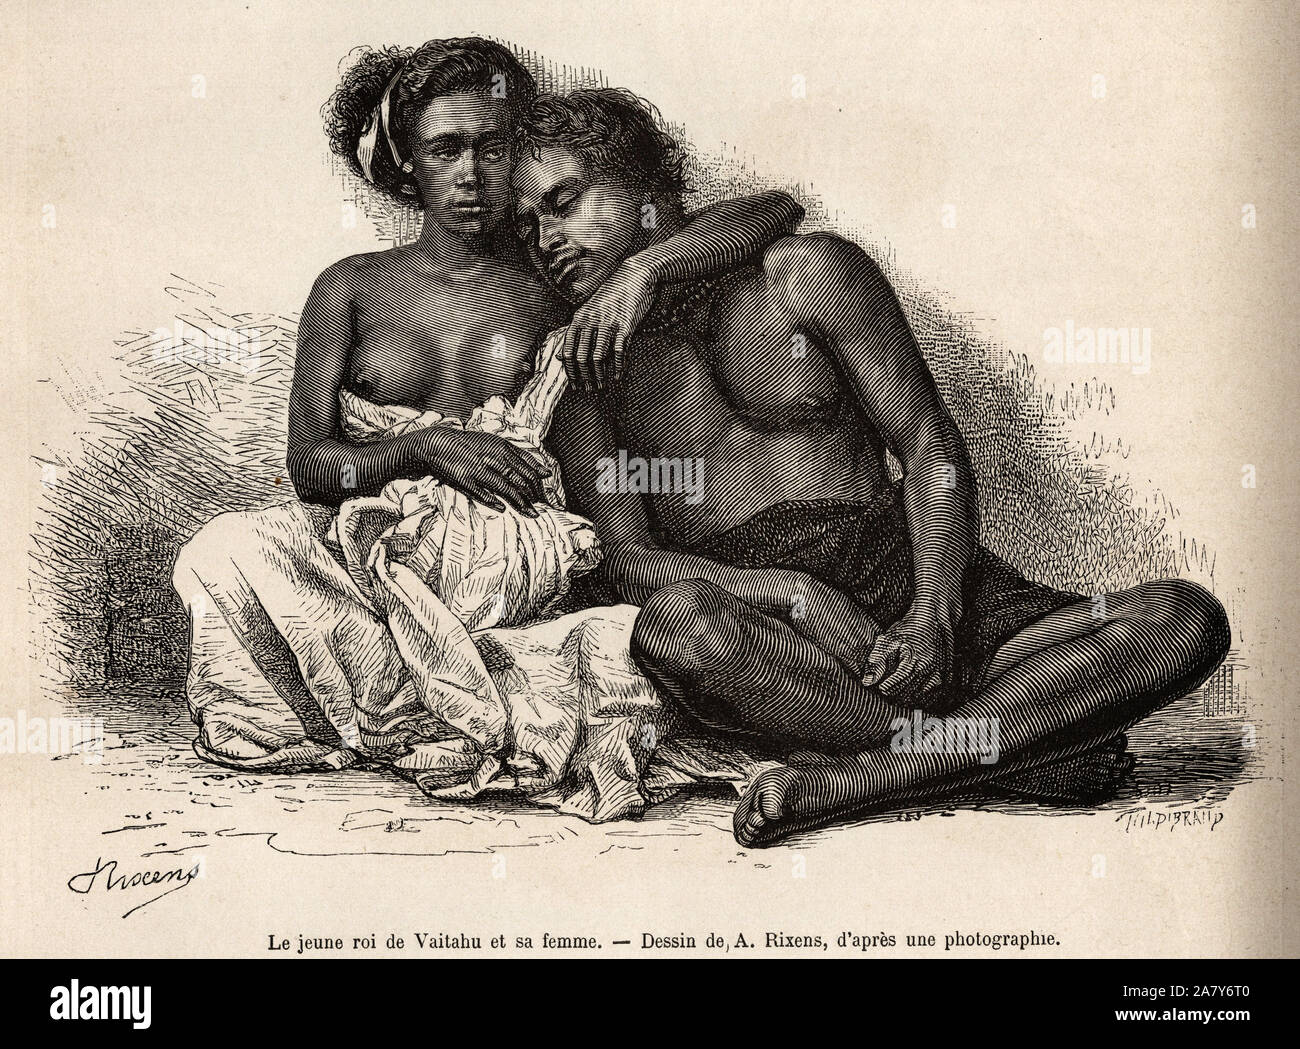 Le jeune roi de Vaitatu , dans l'ile Tauata, dans l'archipel des iles Marquises, s'abandonne aux bras de sa femme, gravure d'apres un dessin de A.Rixe Stock Photo